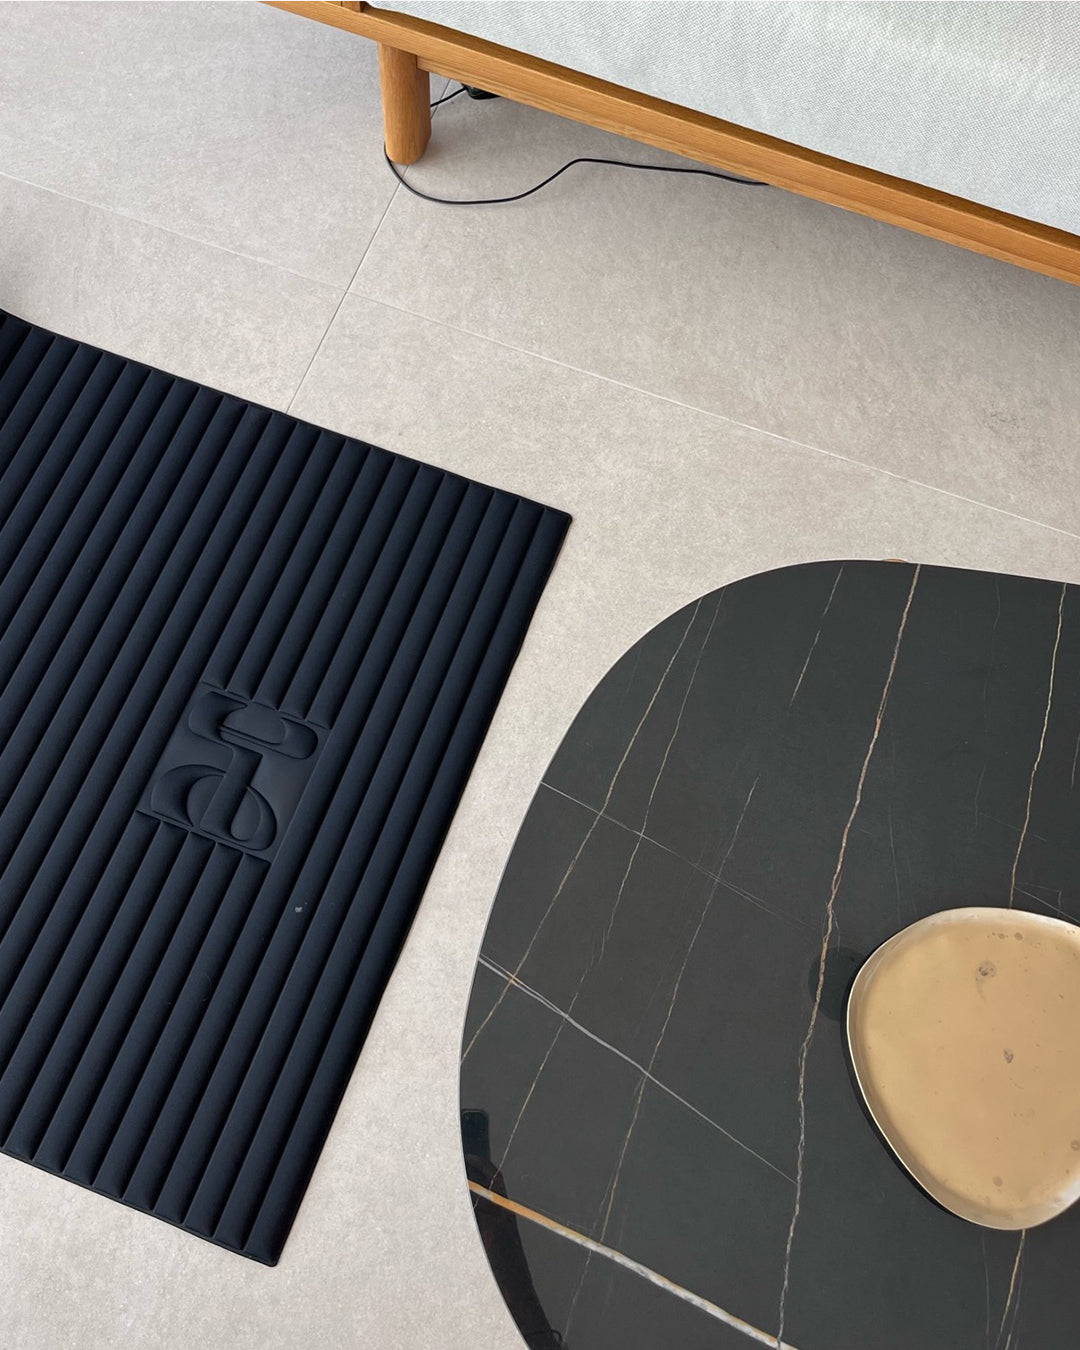 Tapis de sol pour le fitness le yoga et le pilates de la marque hercule studio modèle archy couleur outrenoir photo du tapis zoomé